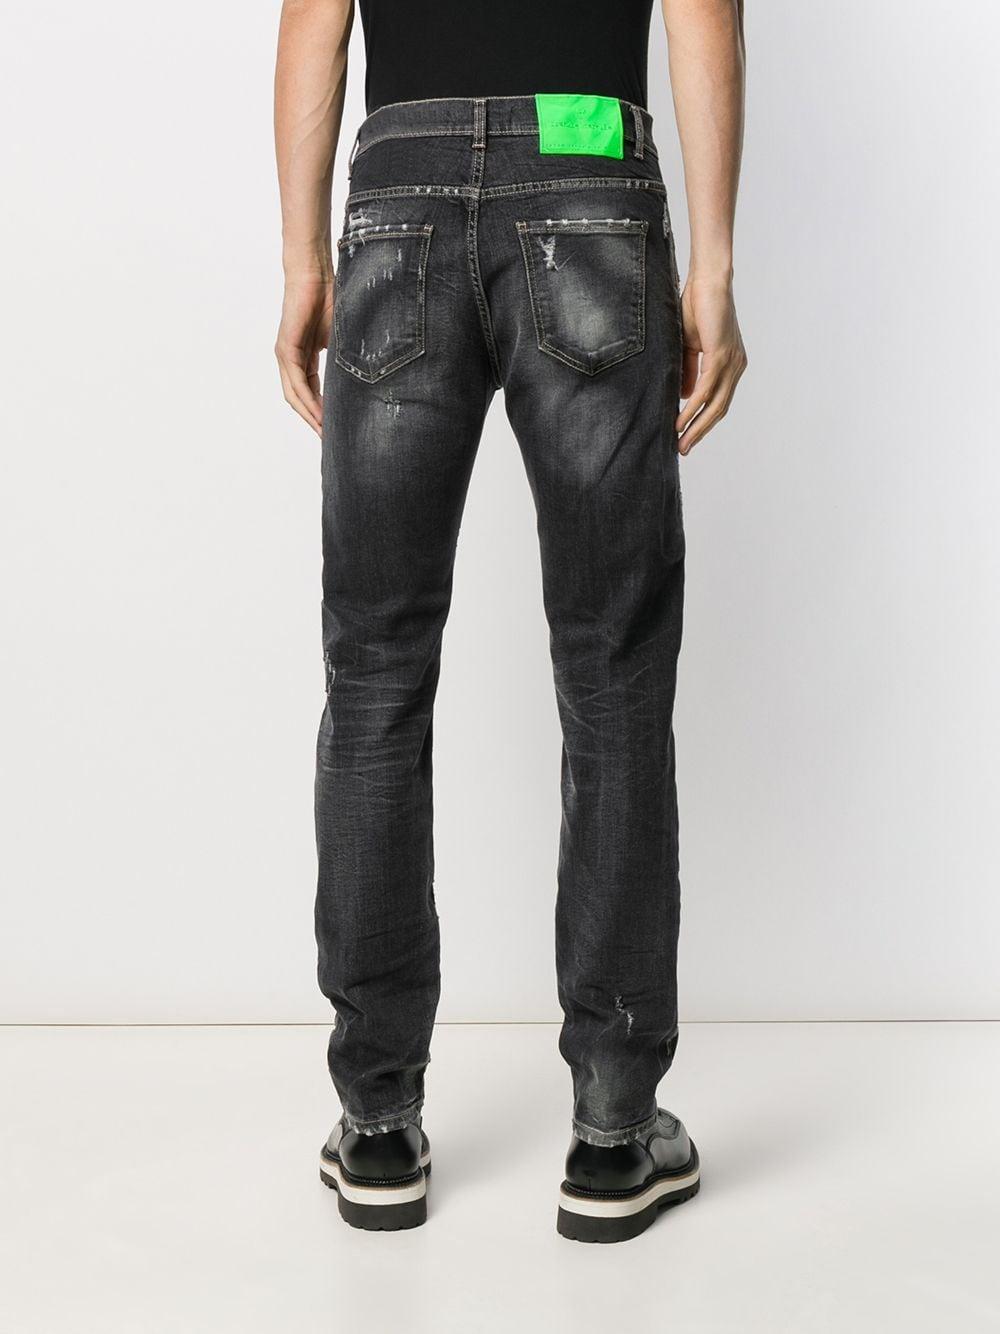 Frankie Morello Denim Einstein Jeans in Grey (Grey) for Men - Lyst